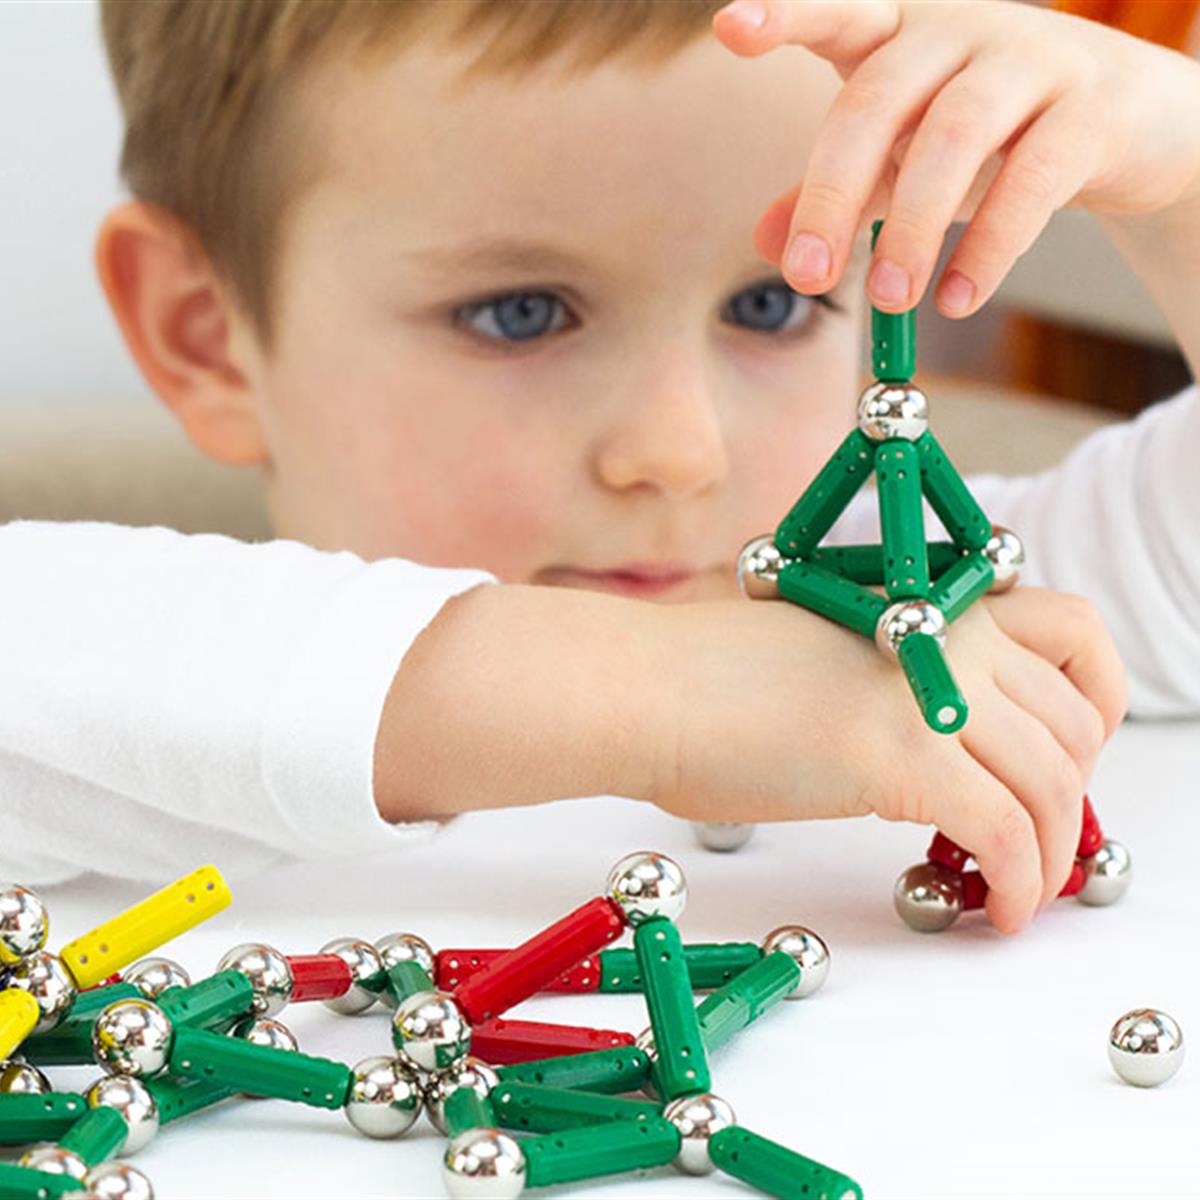 Cómo pueden los juguetes magnéticos de alta potencia causar daño a los niños  